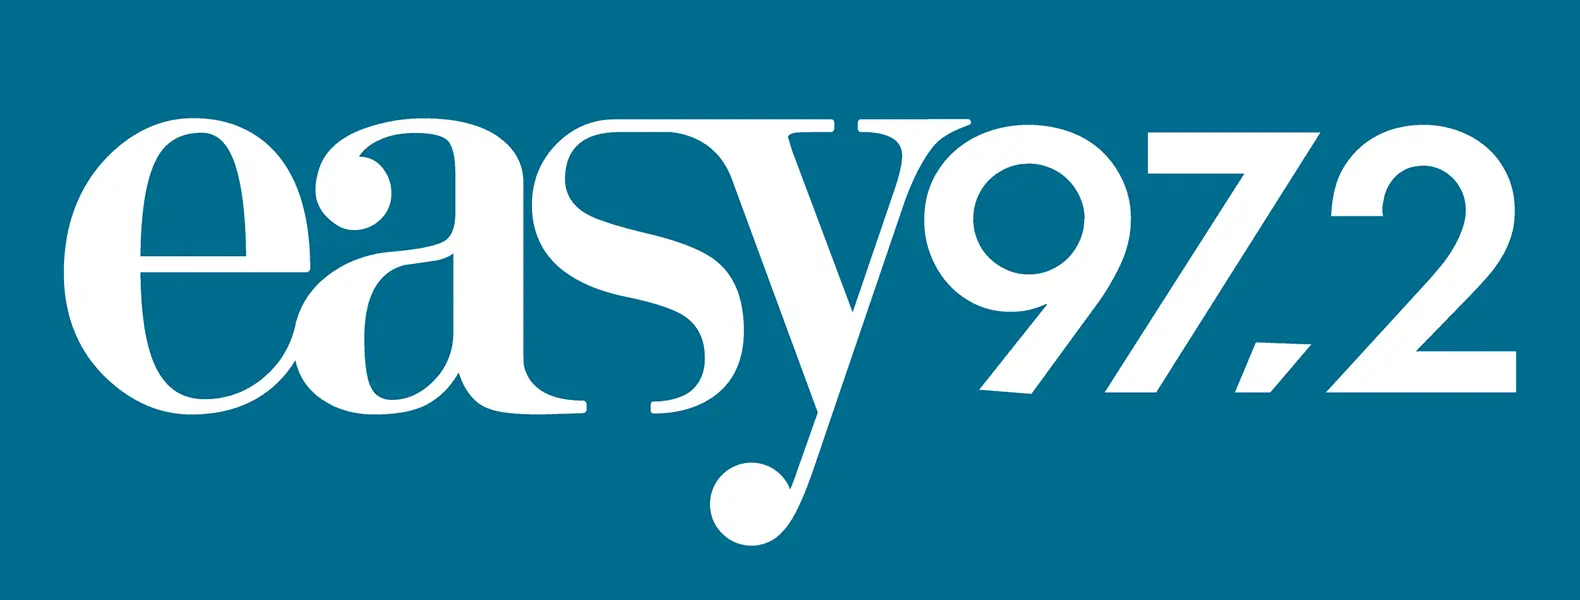 logo-easy972